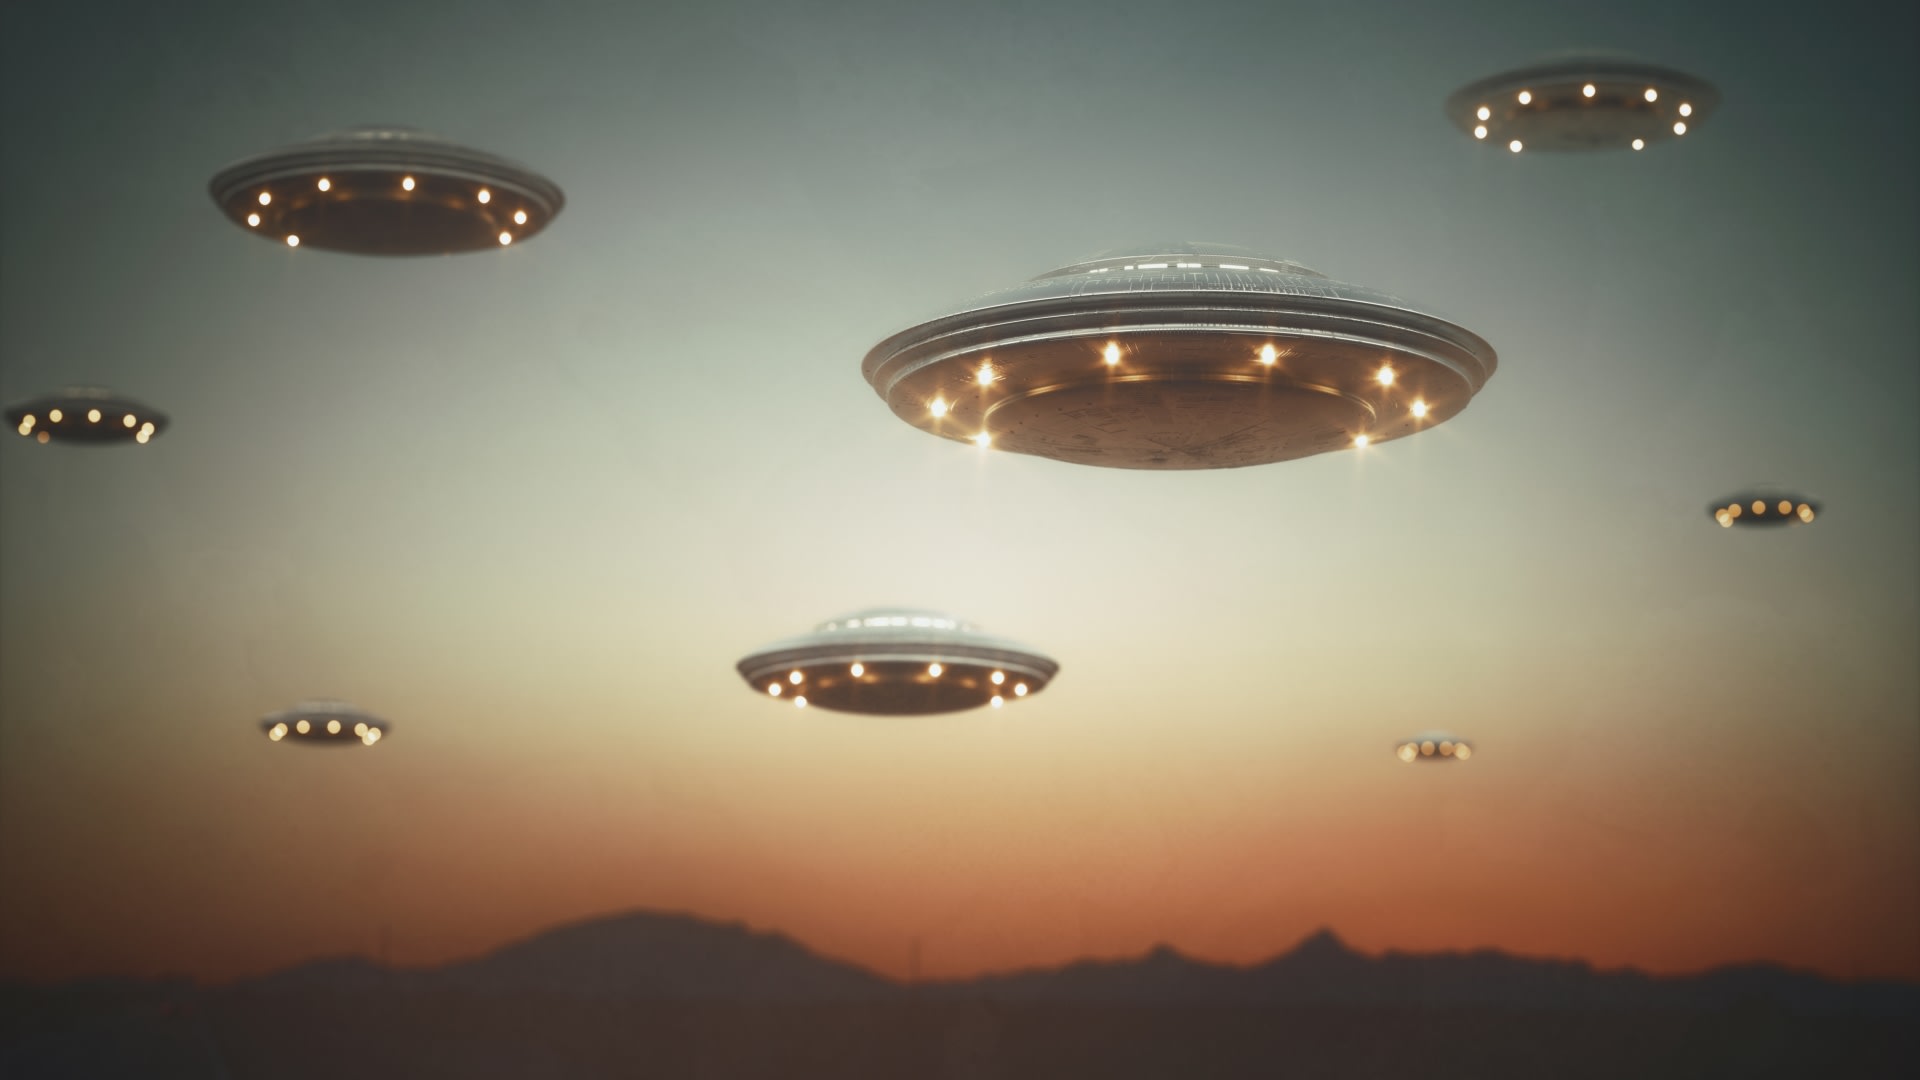 Brzy se dozvíme, jak to v Americe bylo s pozorovnáním UFO